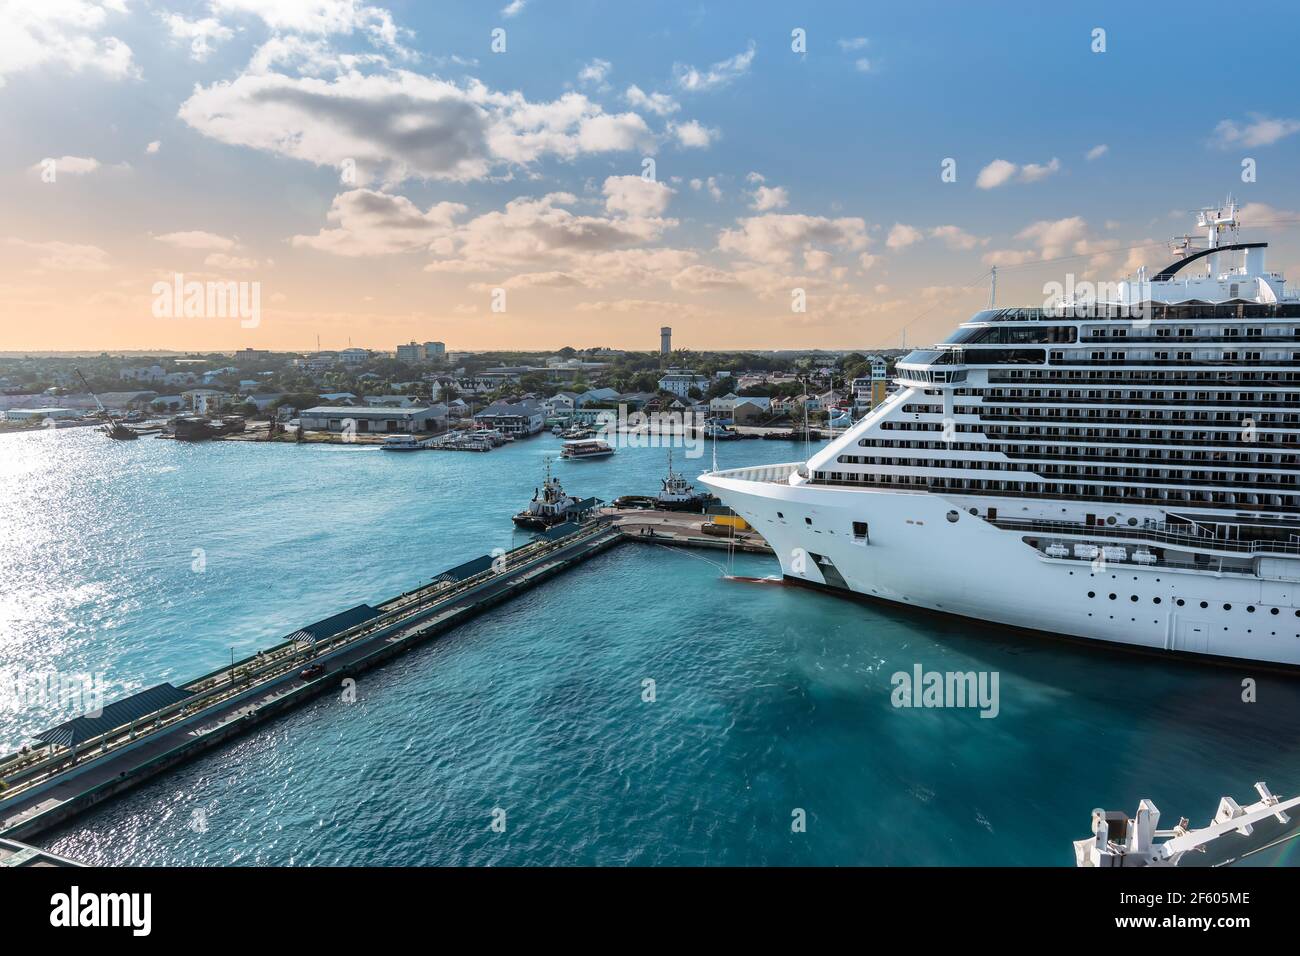 Cruise ship docked in cruise port Nassau Bahamas. Stock Photo